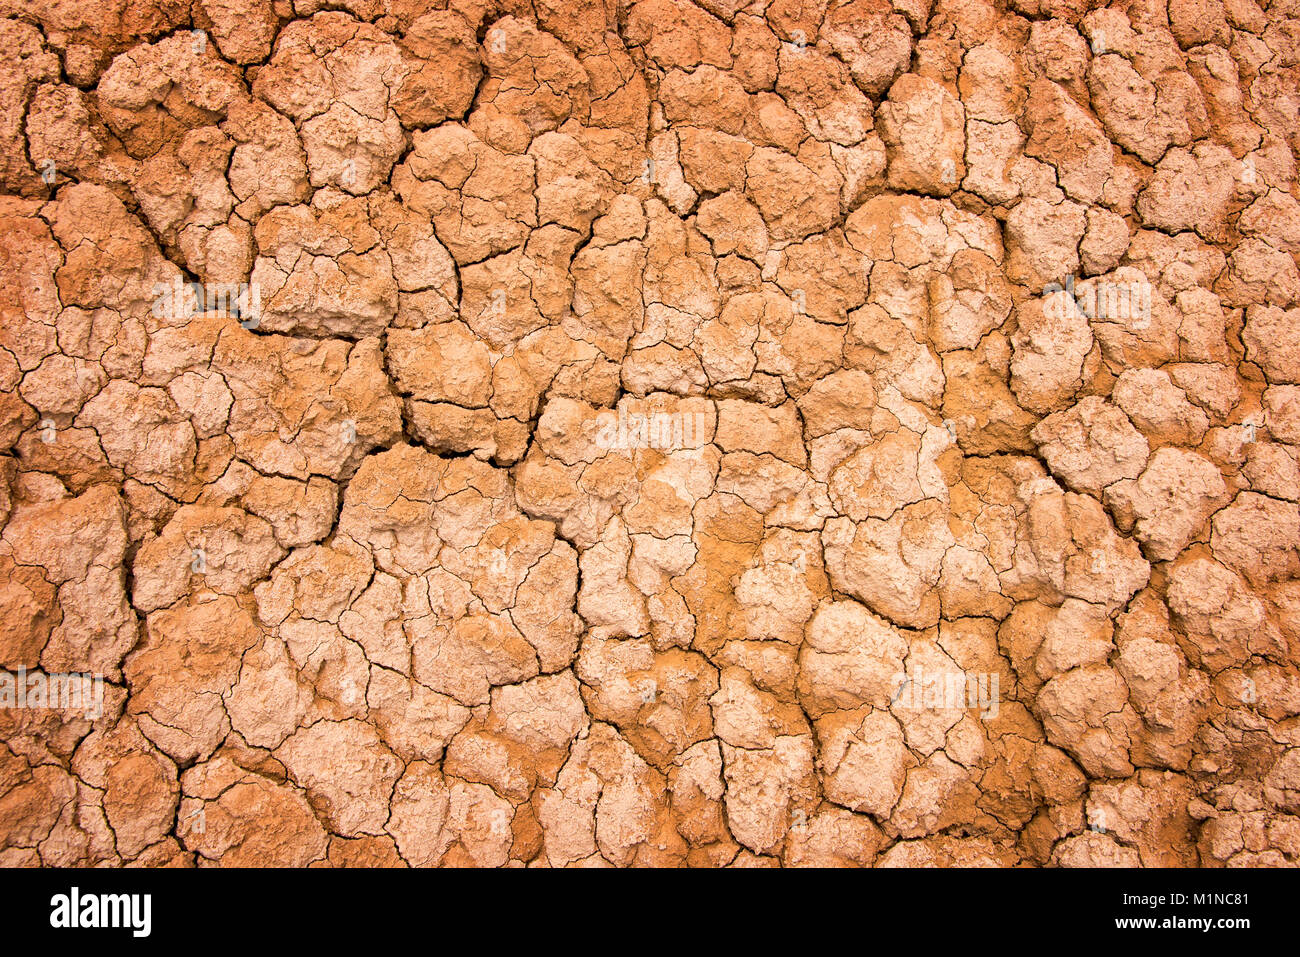 Arrière-plan de la terre craquelée à sec, la texture du désert d'argile Banque D'Images